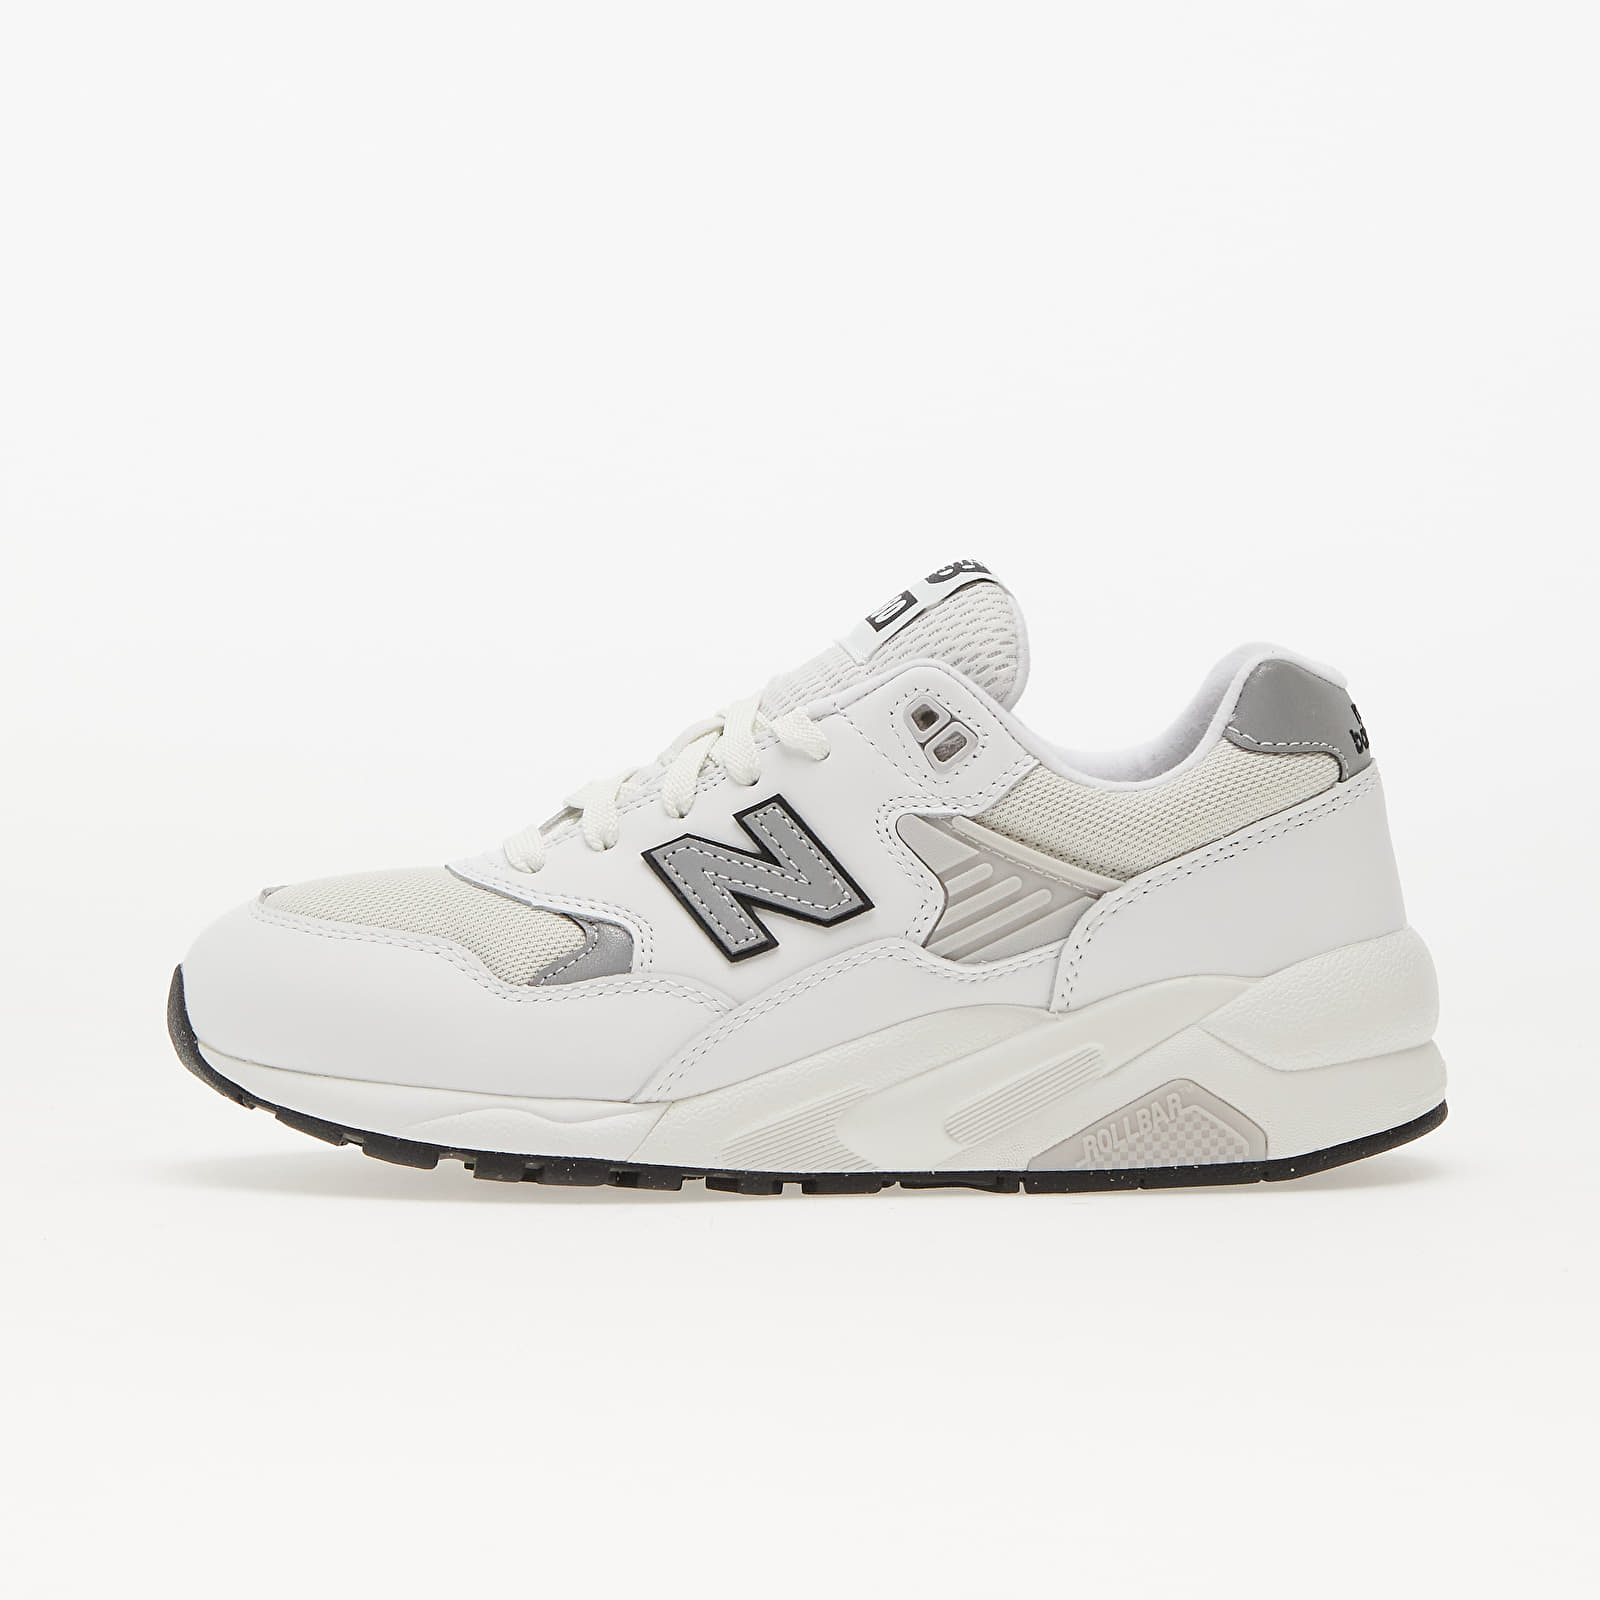 Încălțăminte și sneakerși pentru bărbați New Balance 580 White